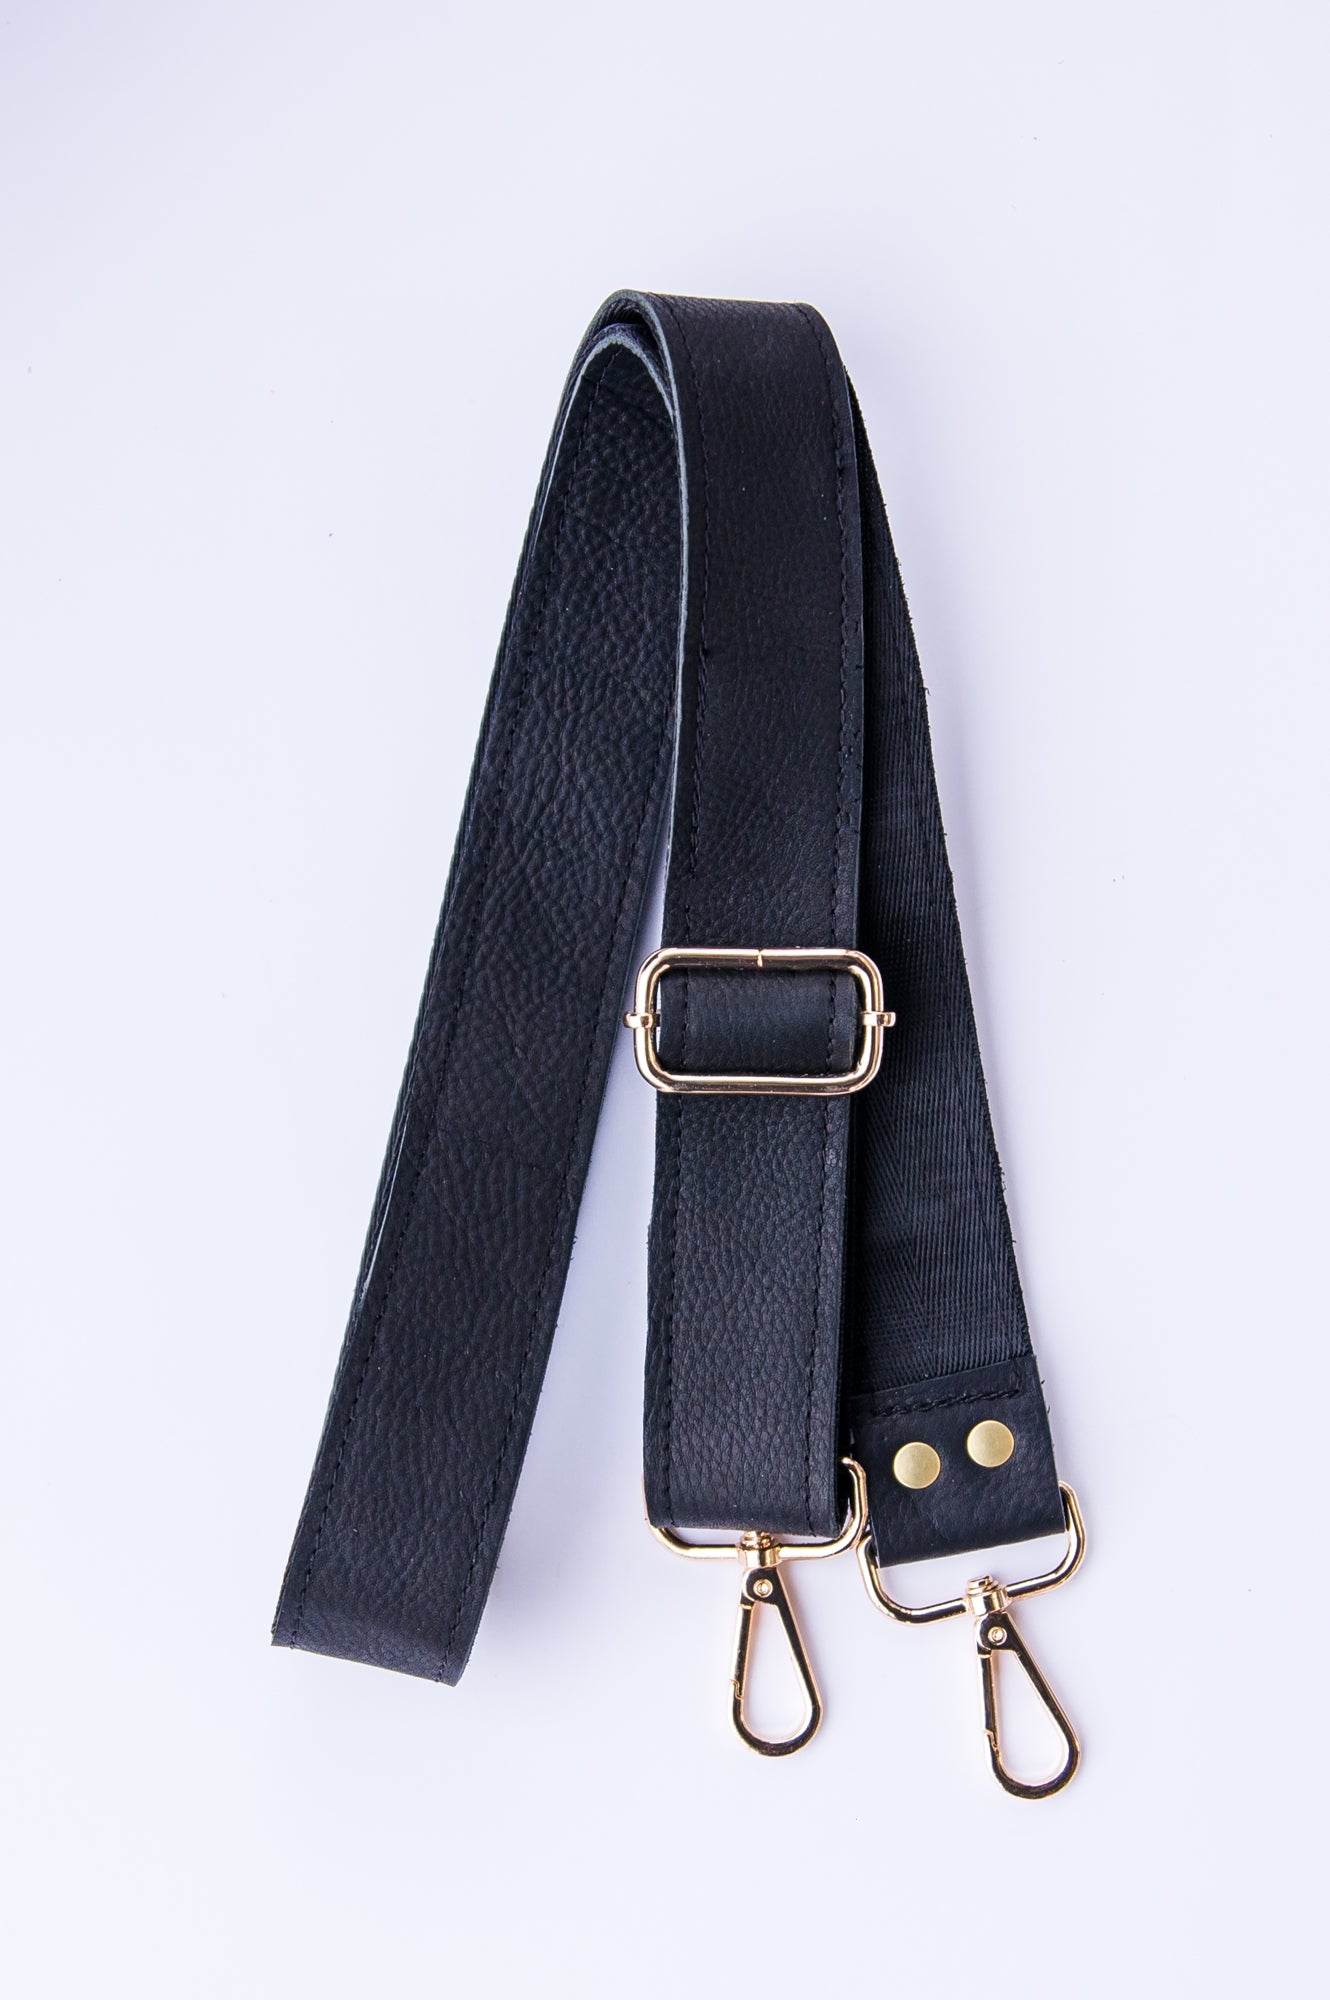 Adjustable leather shoulder strap